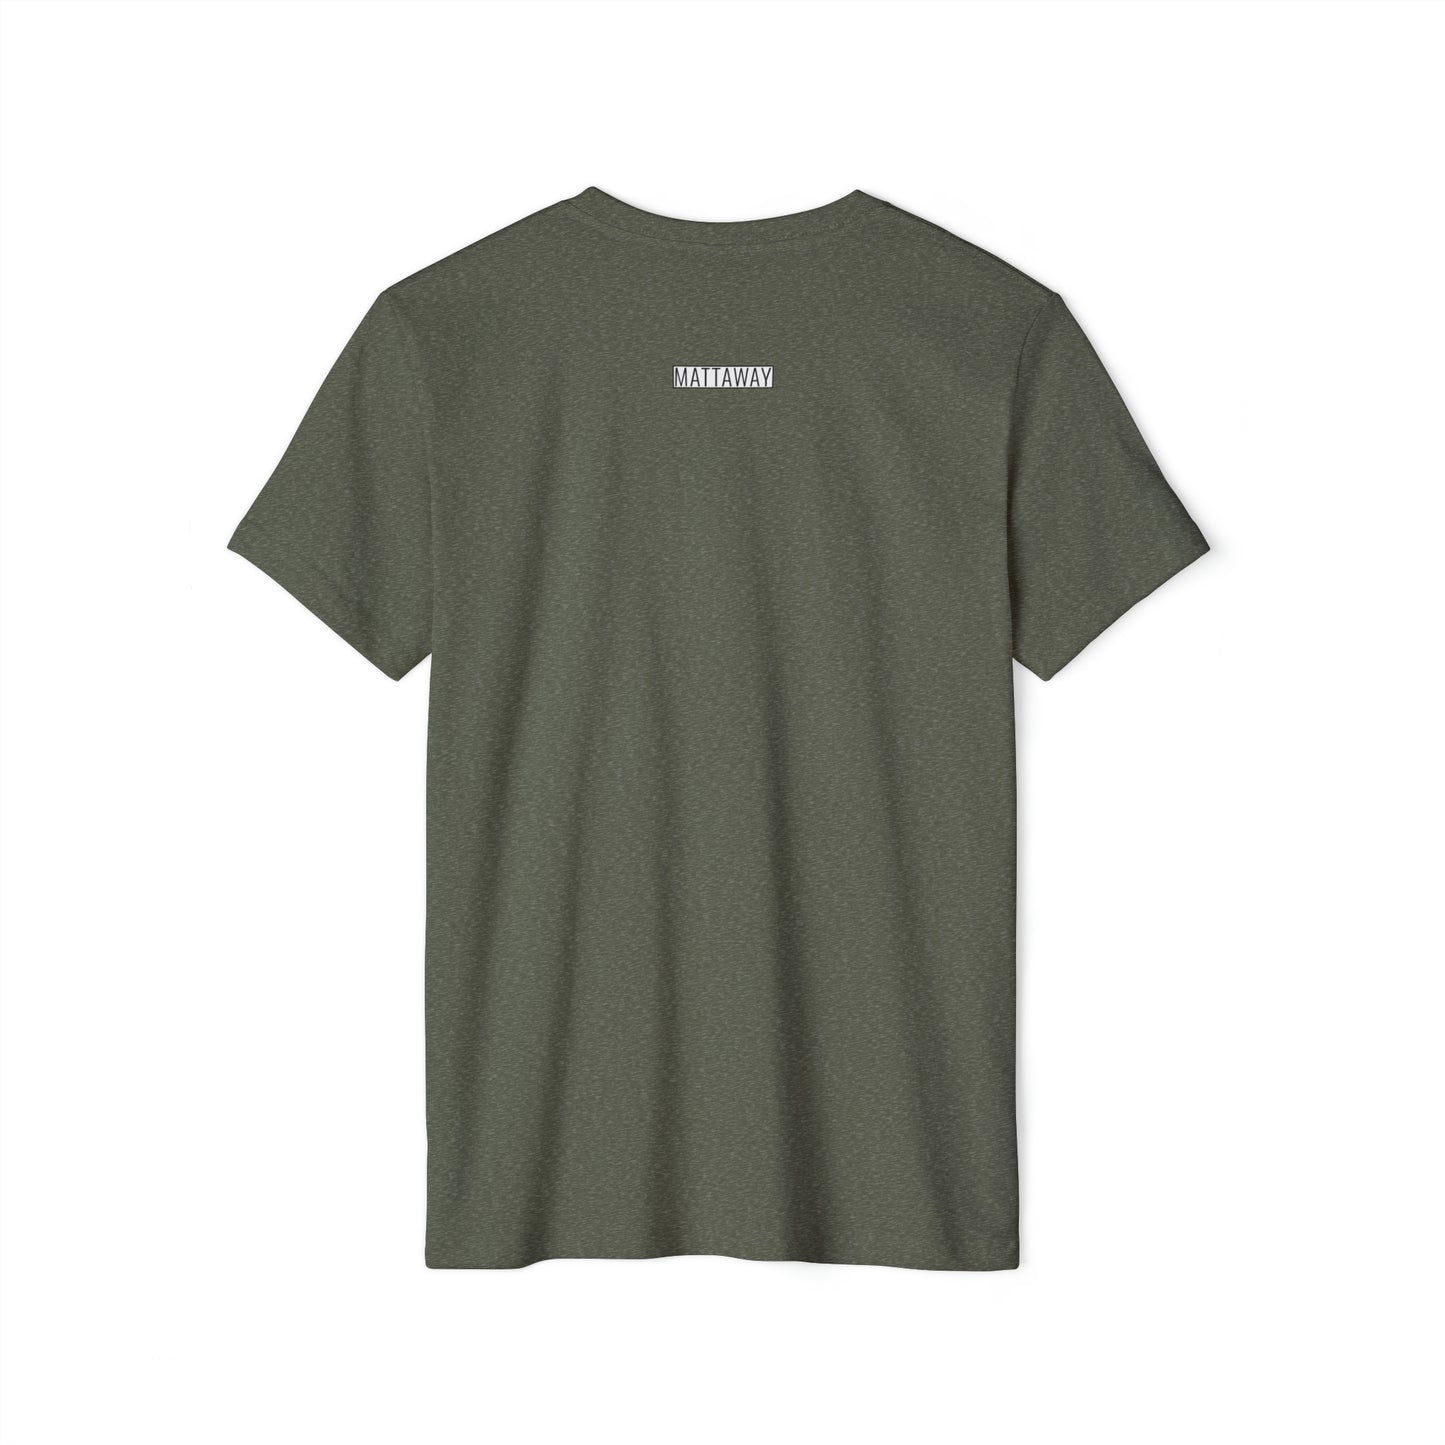 MINIMAL SHAPES 106 - Unisex Recycled Organic T-Shirt